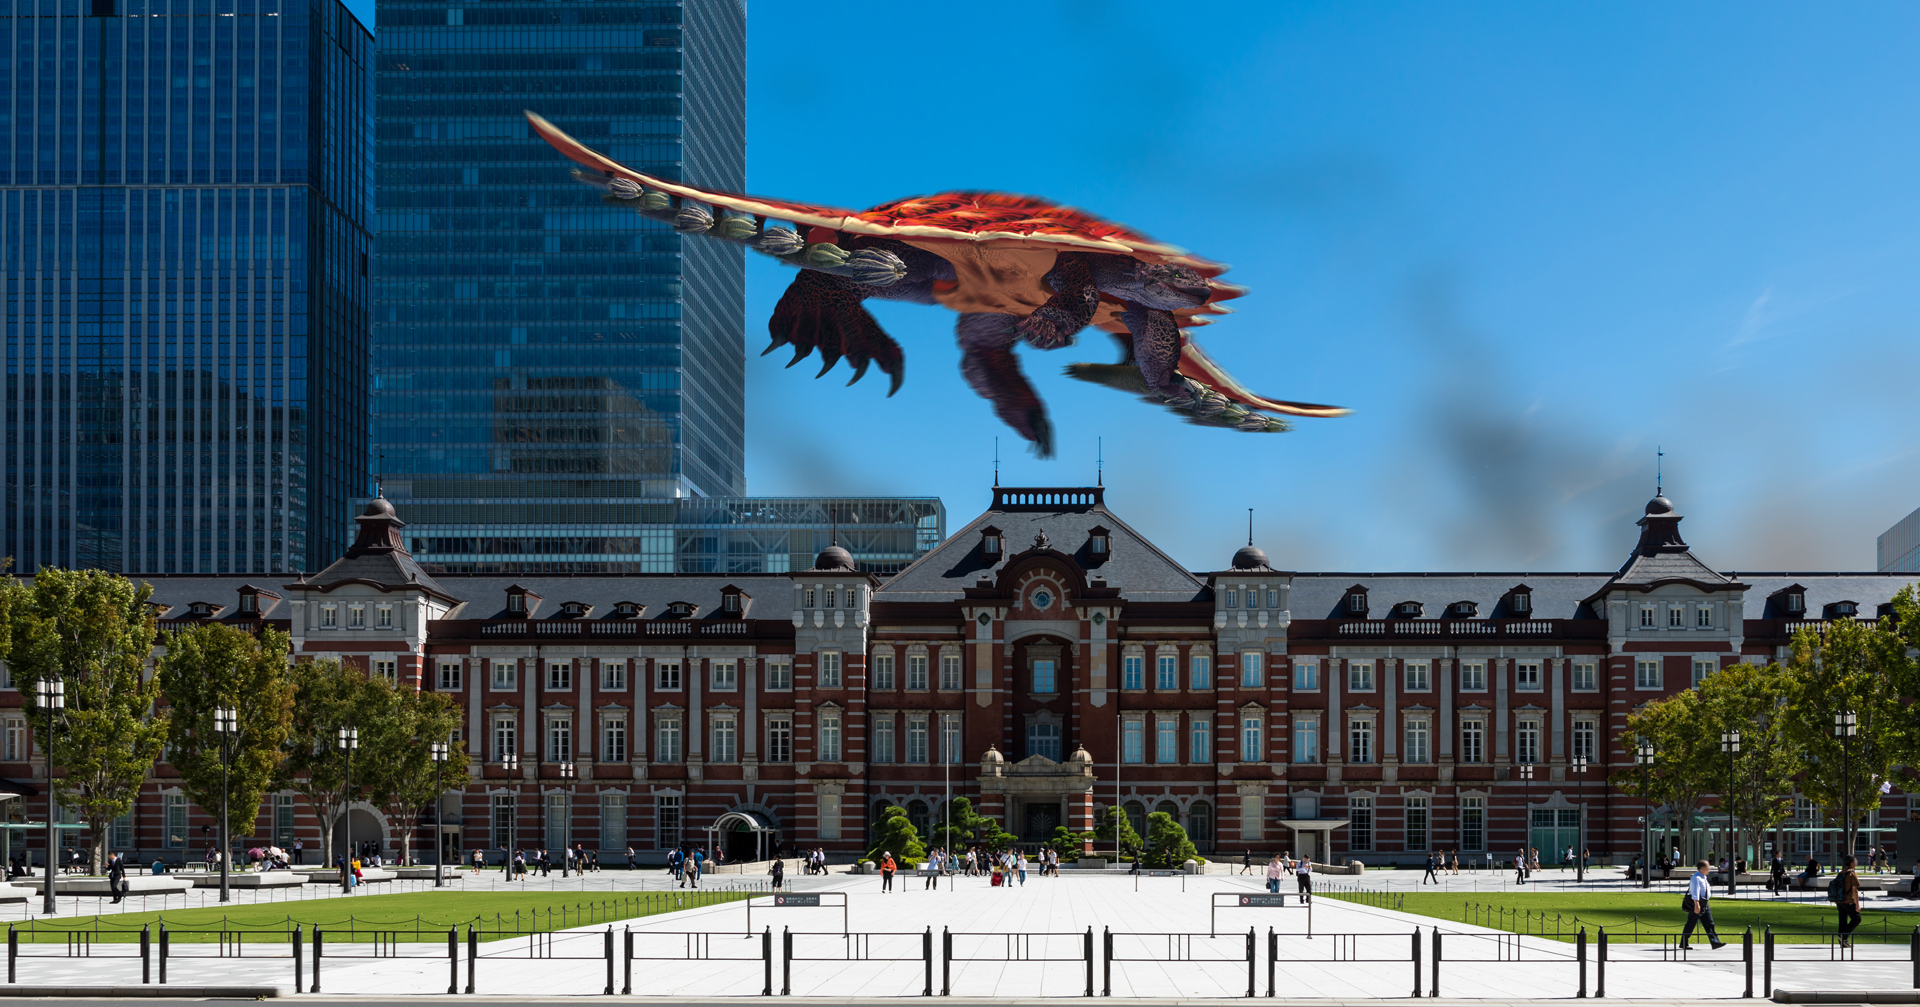 「No.06 飛行亀型怪獣」のシーン画像